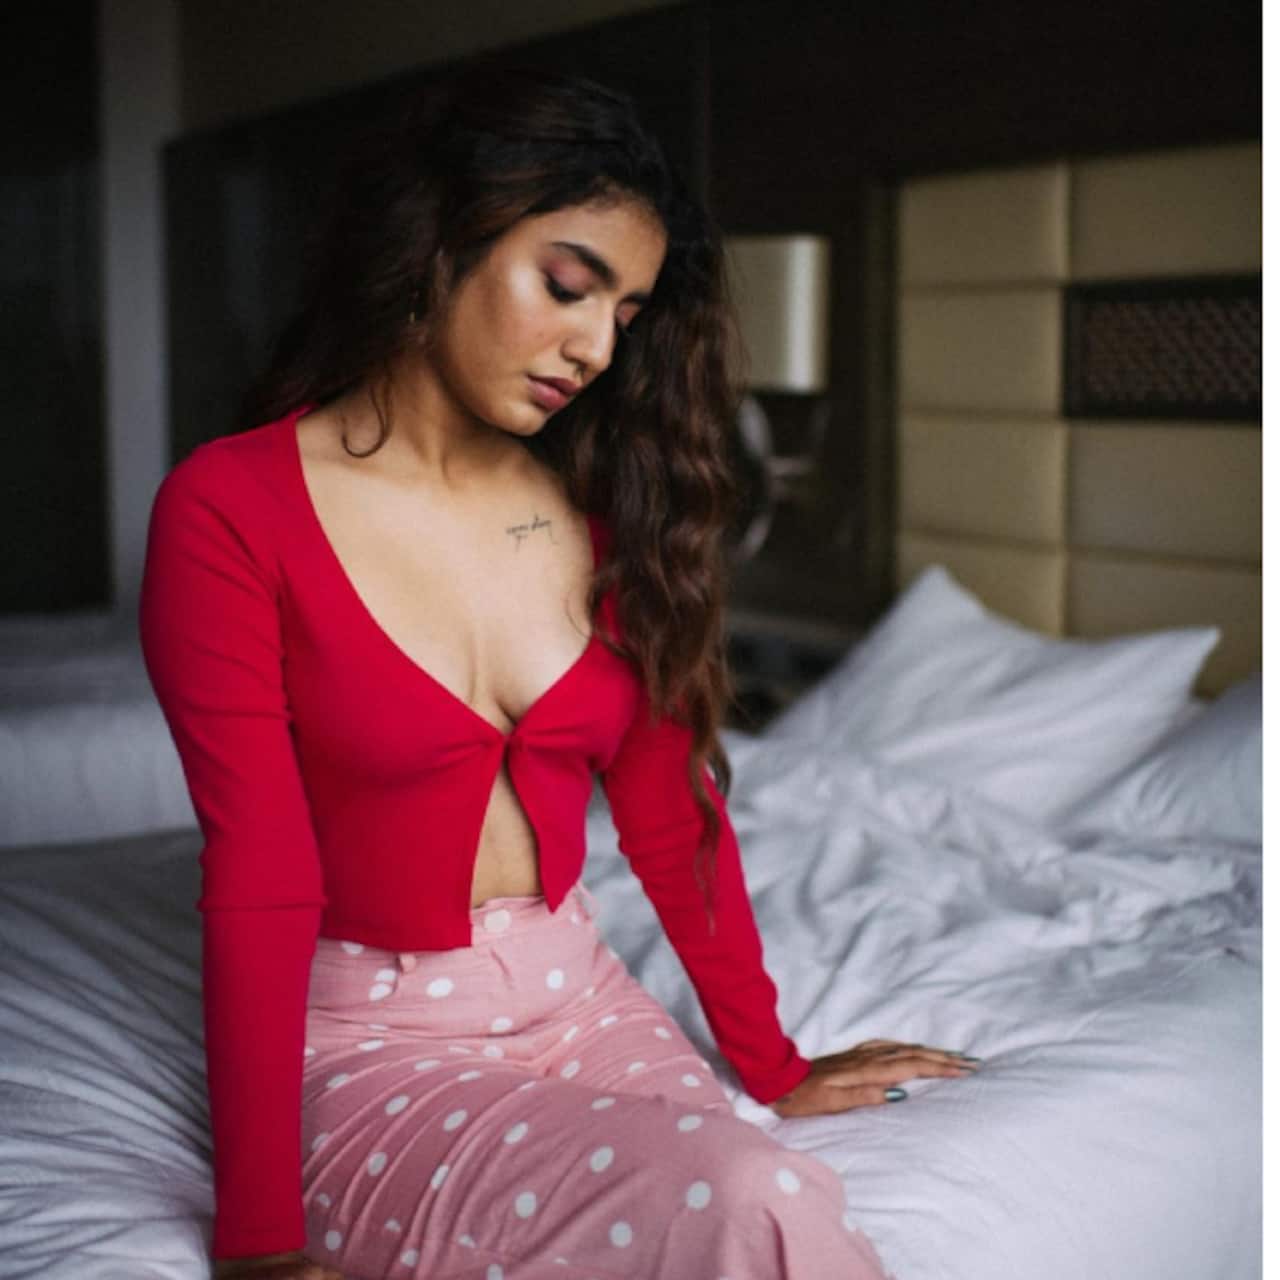 प्रिया प्रकाश वारियर (Priya Prakash Varrier)  की बेडरूम फोटोज